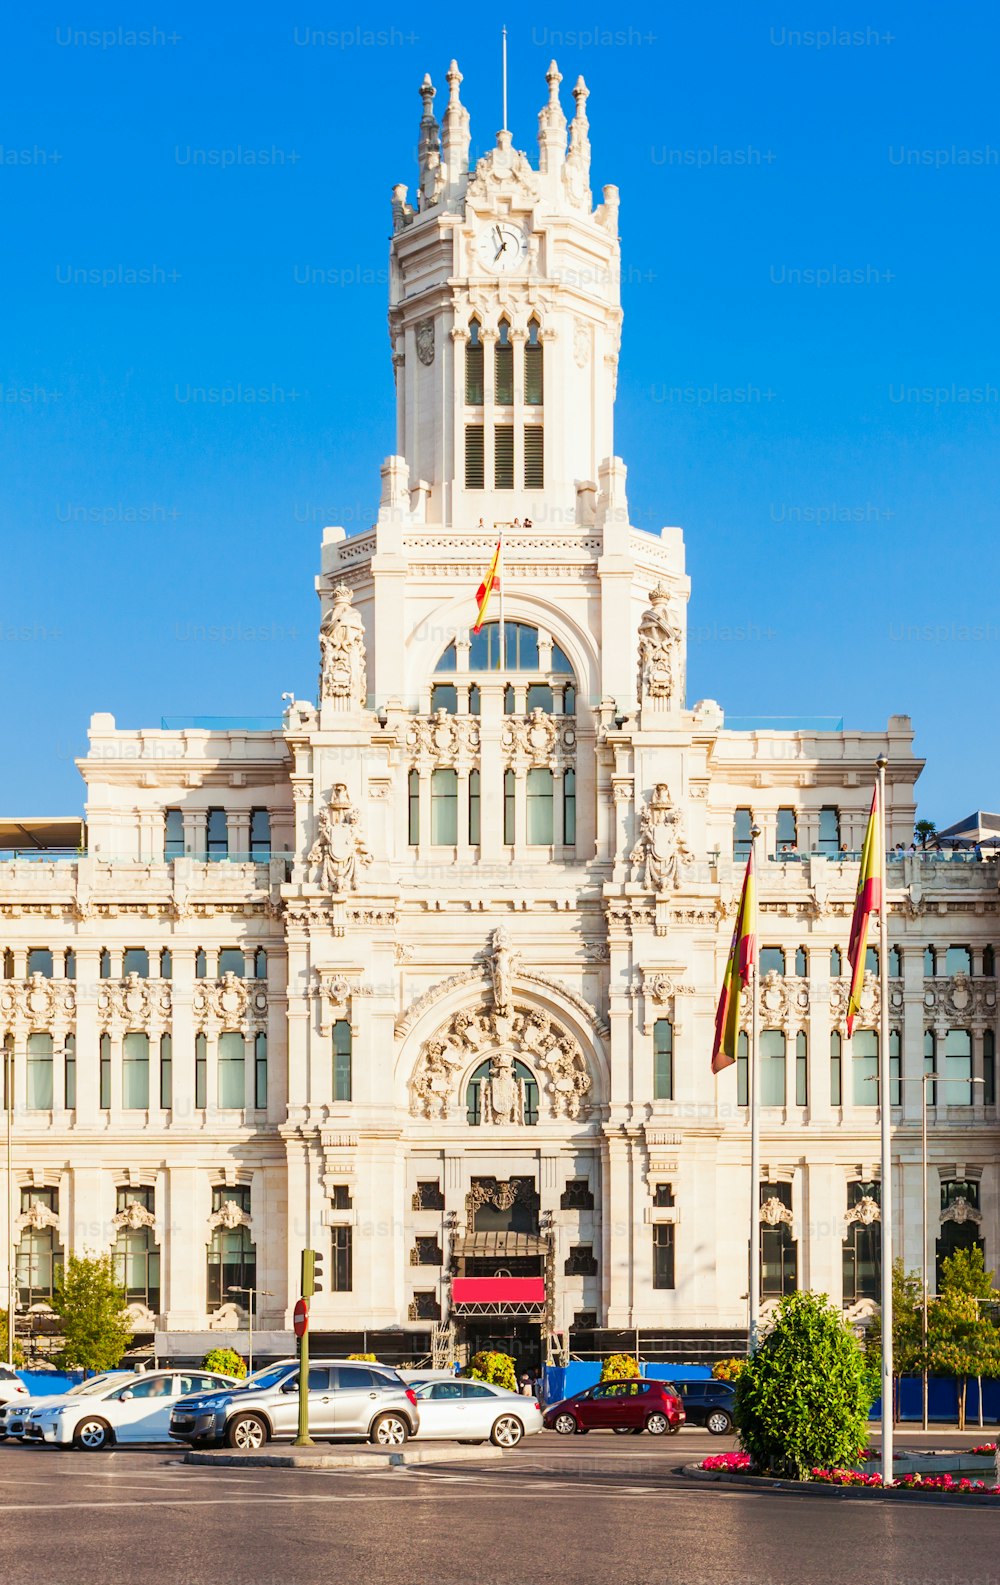 Il Palazzo di Cibele o Palacio de Cibeles è un palazzo situato in Plaza de Cibeles nel centro di Madrid, in Spagna.